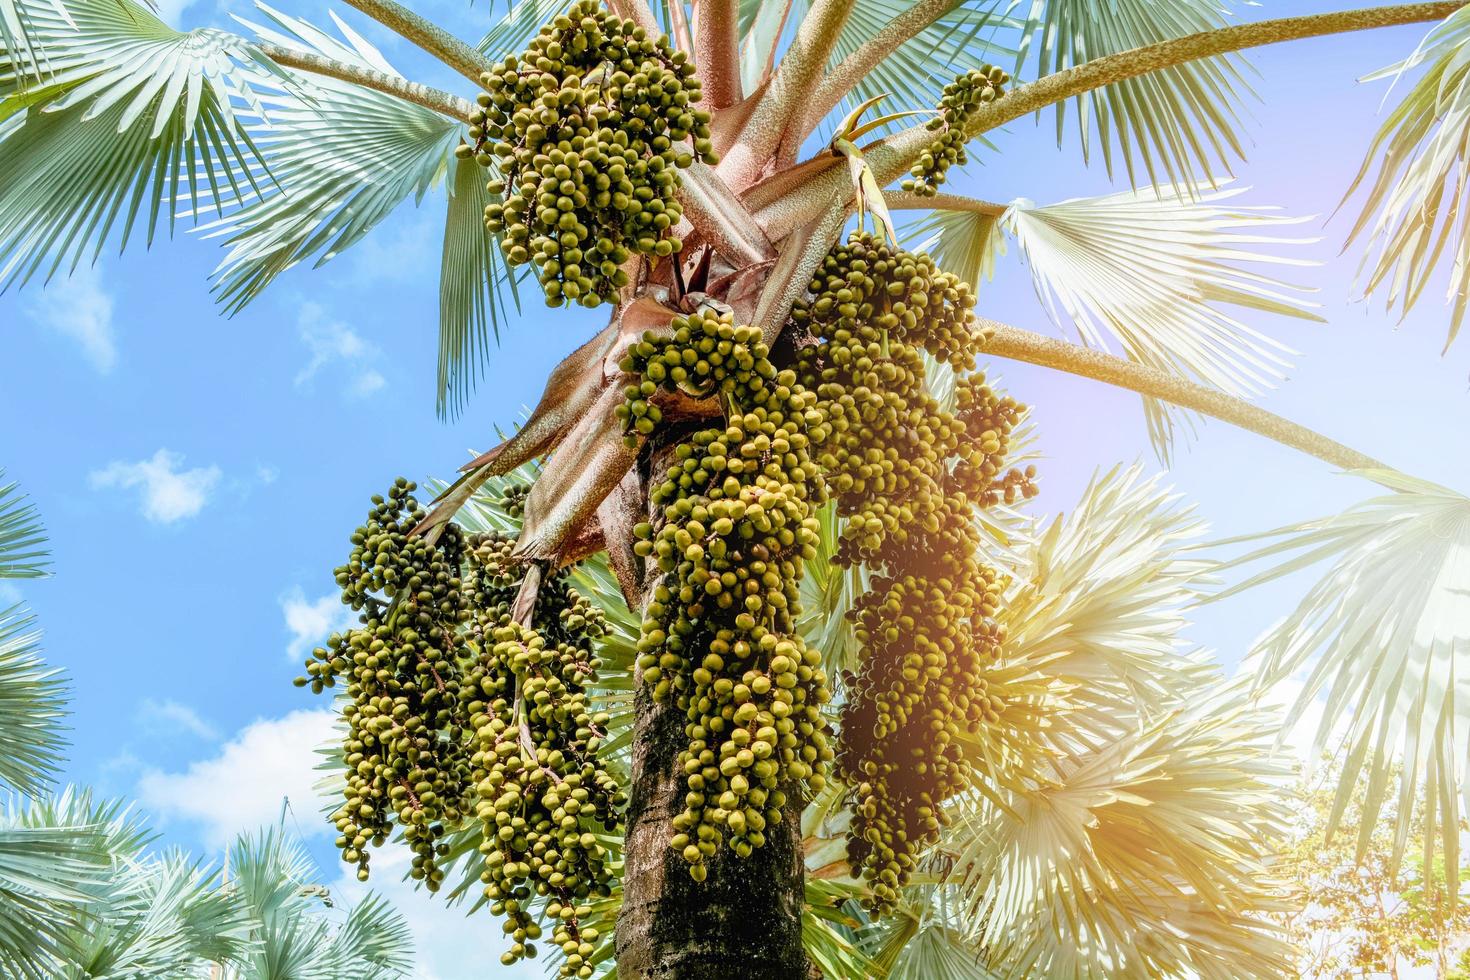 Palmenfrucht auf Baum im Garten am hellen Tag und Hintergrund des blauen Himmels foto